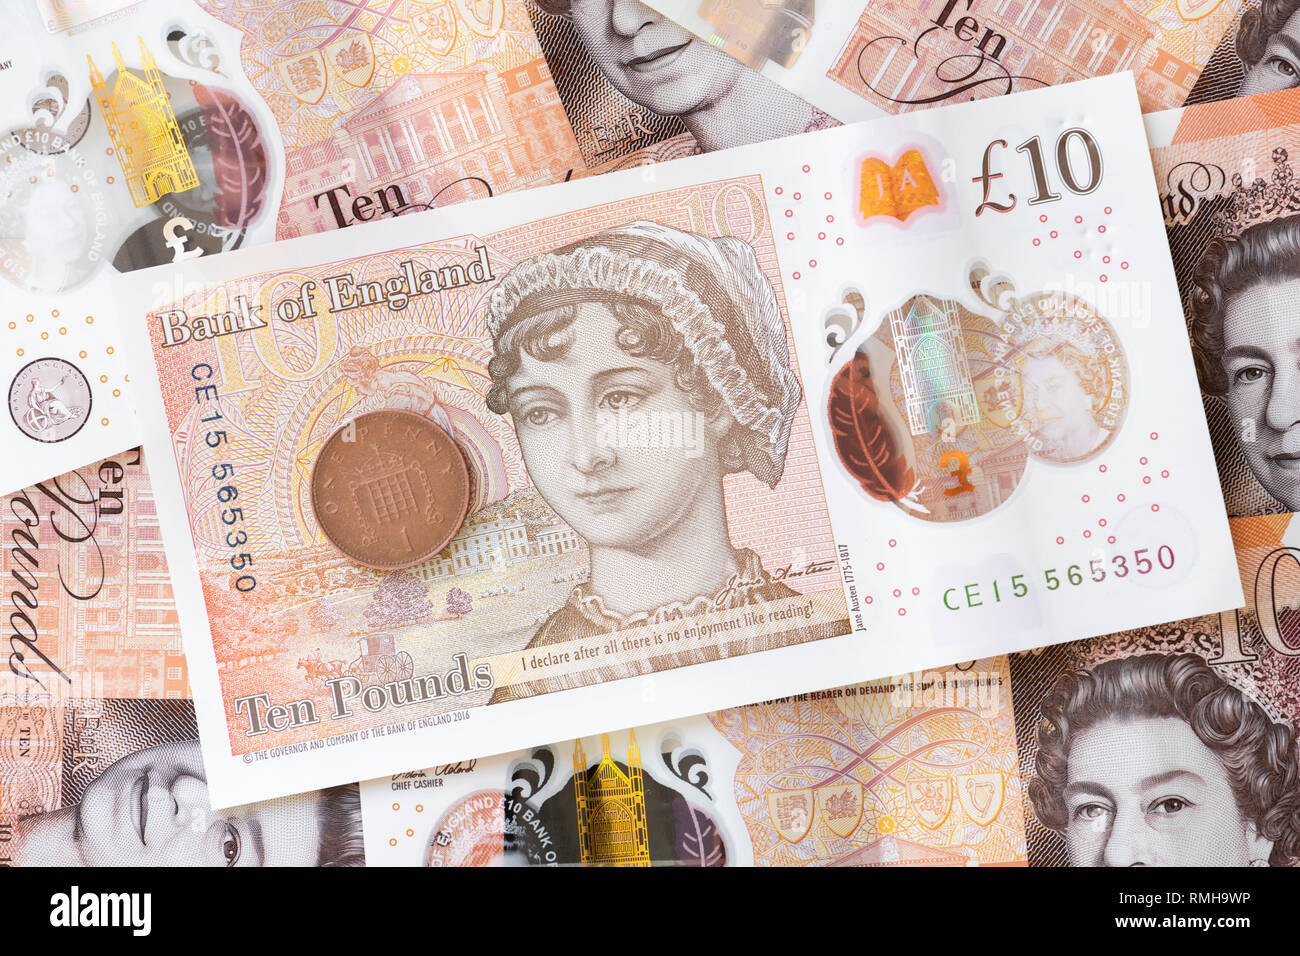 Jane Austen 10 £ Pound nota, Inglaterra, Reino Unido. Foto de stock